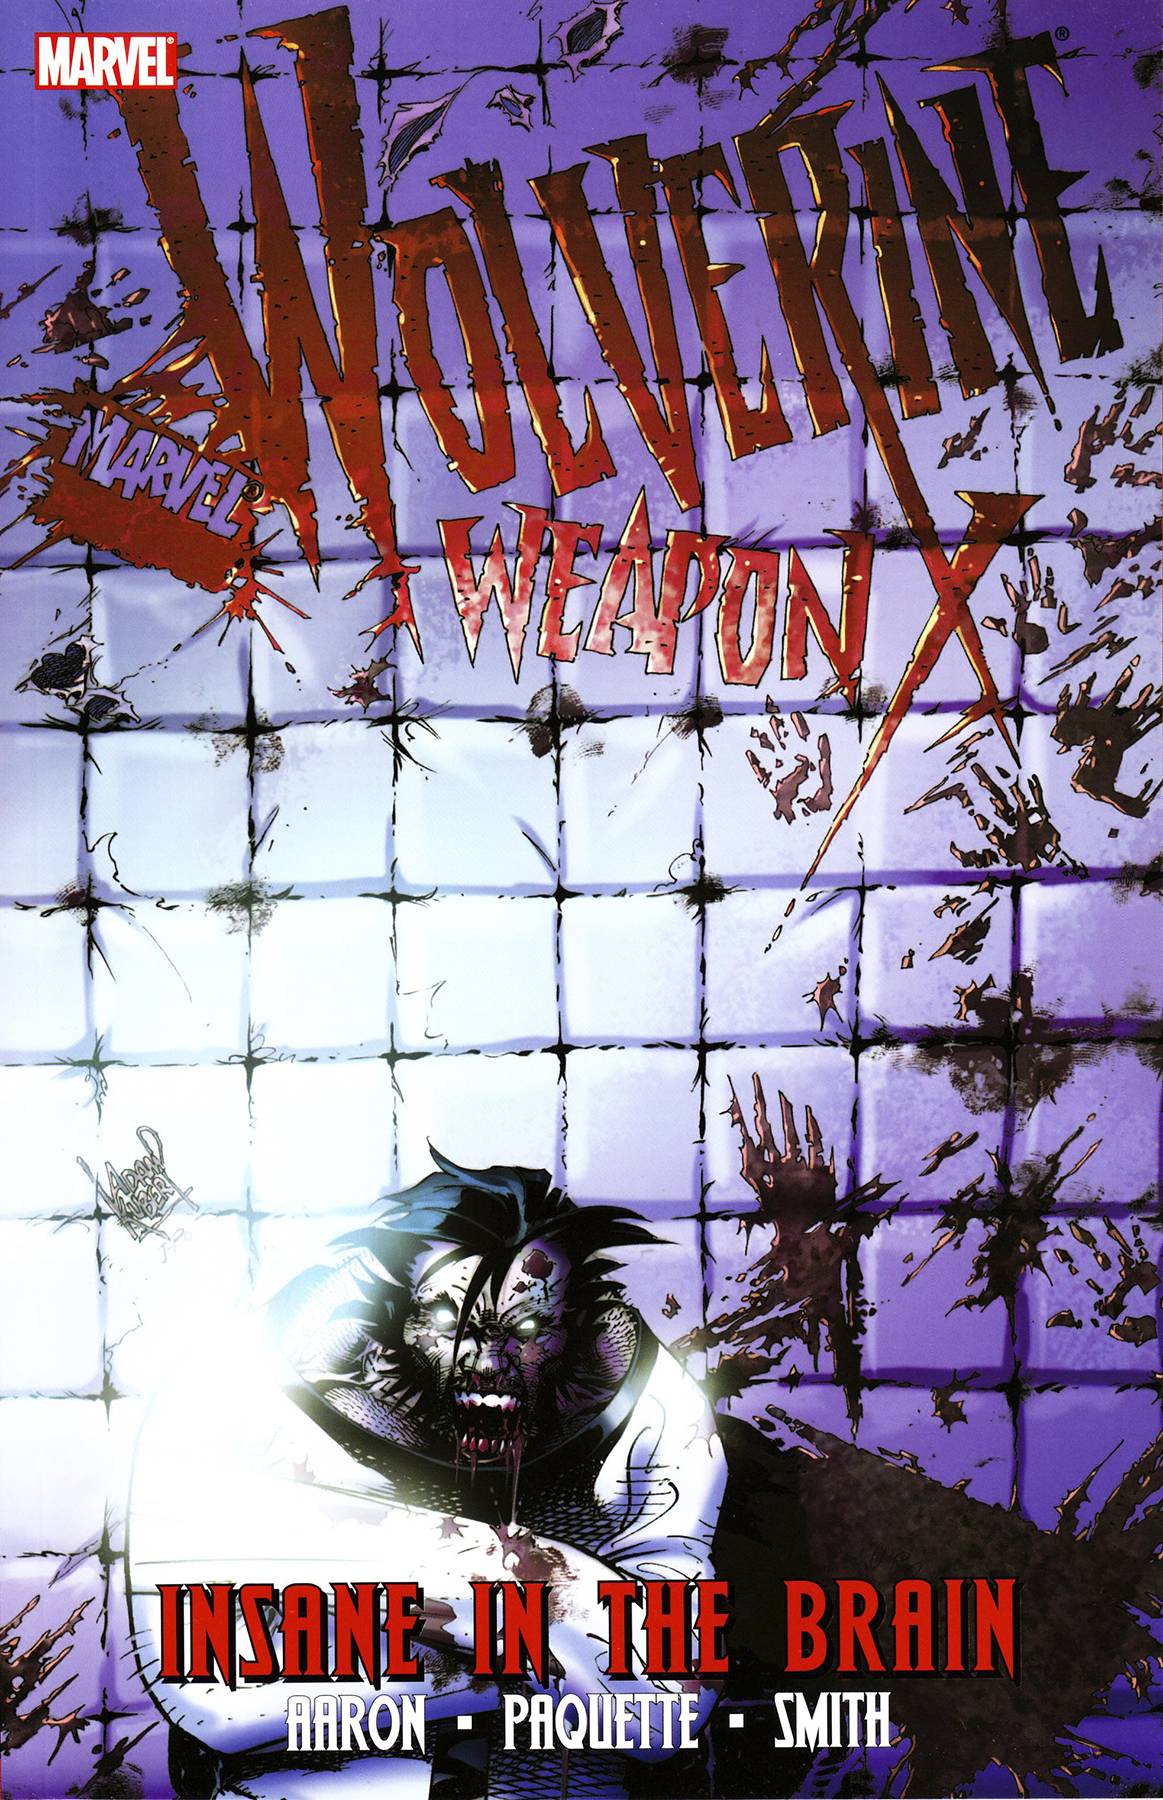 Wolverine Weapon X Graphic Novel Volume 2 Insane In Brain